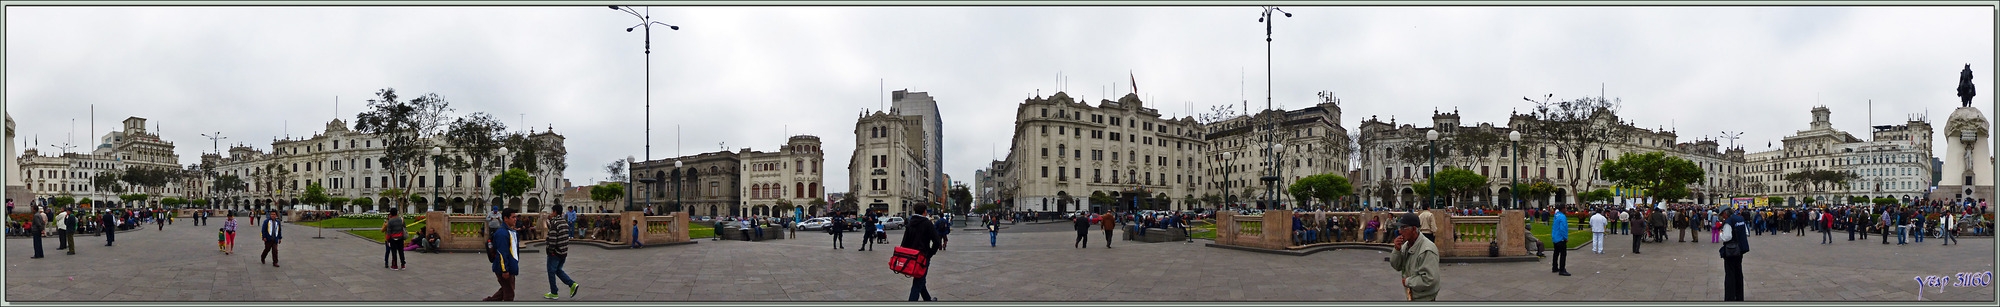 Balade le nez en l'air dans le Lima historique (Pérou) : Vue panoramique à 360° de la Plaza San Martin